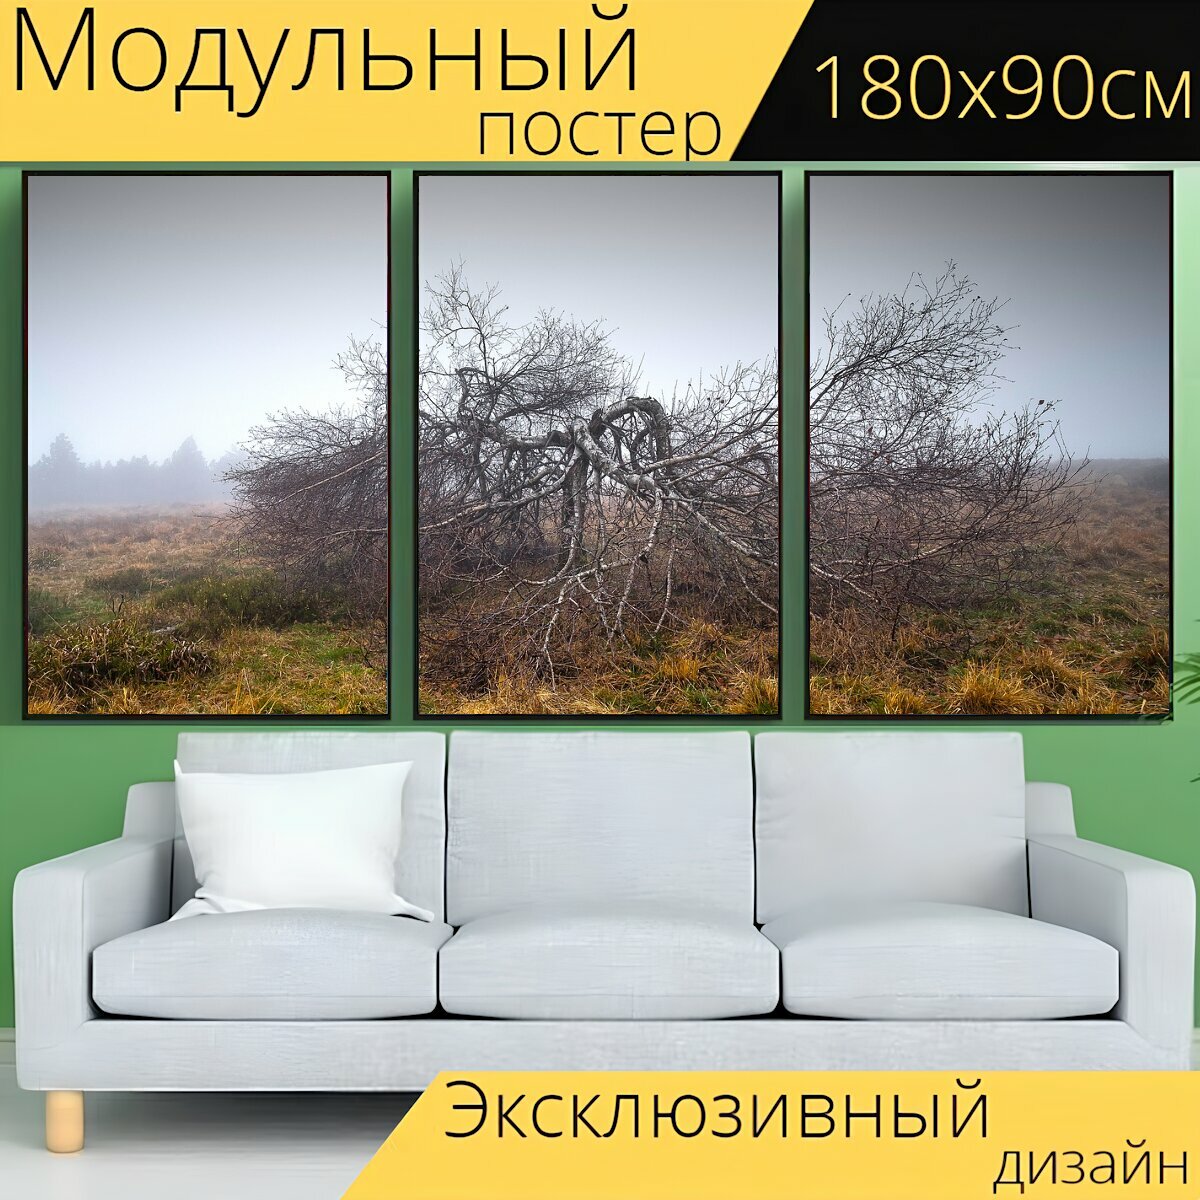 Модульный постер "Туман, дерево, высокий болот" 180 x 90 см. для интерьера